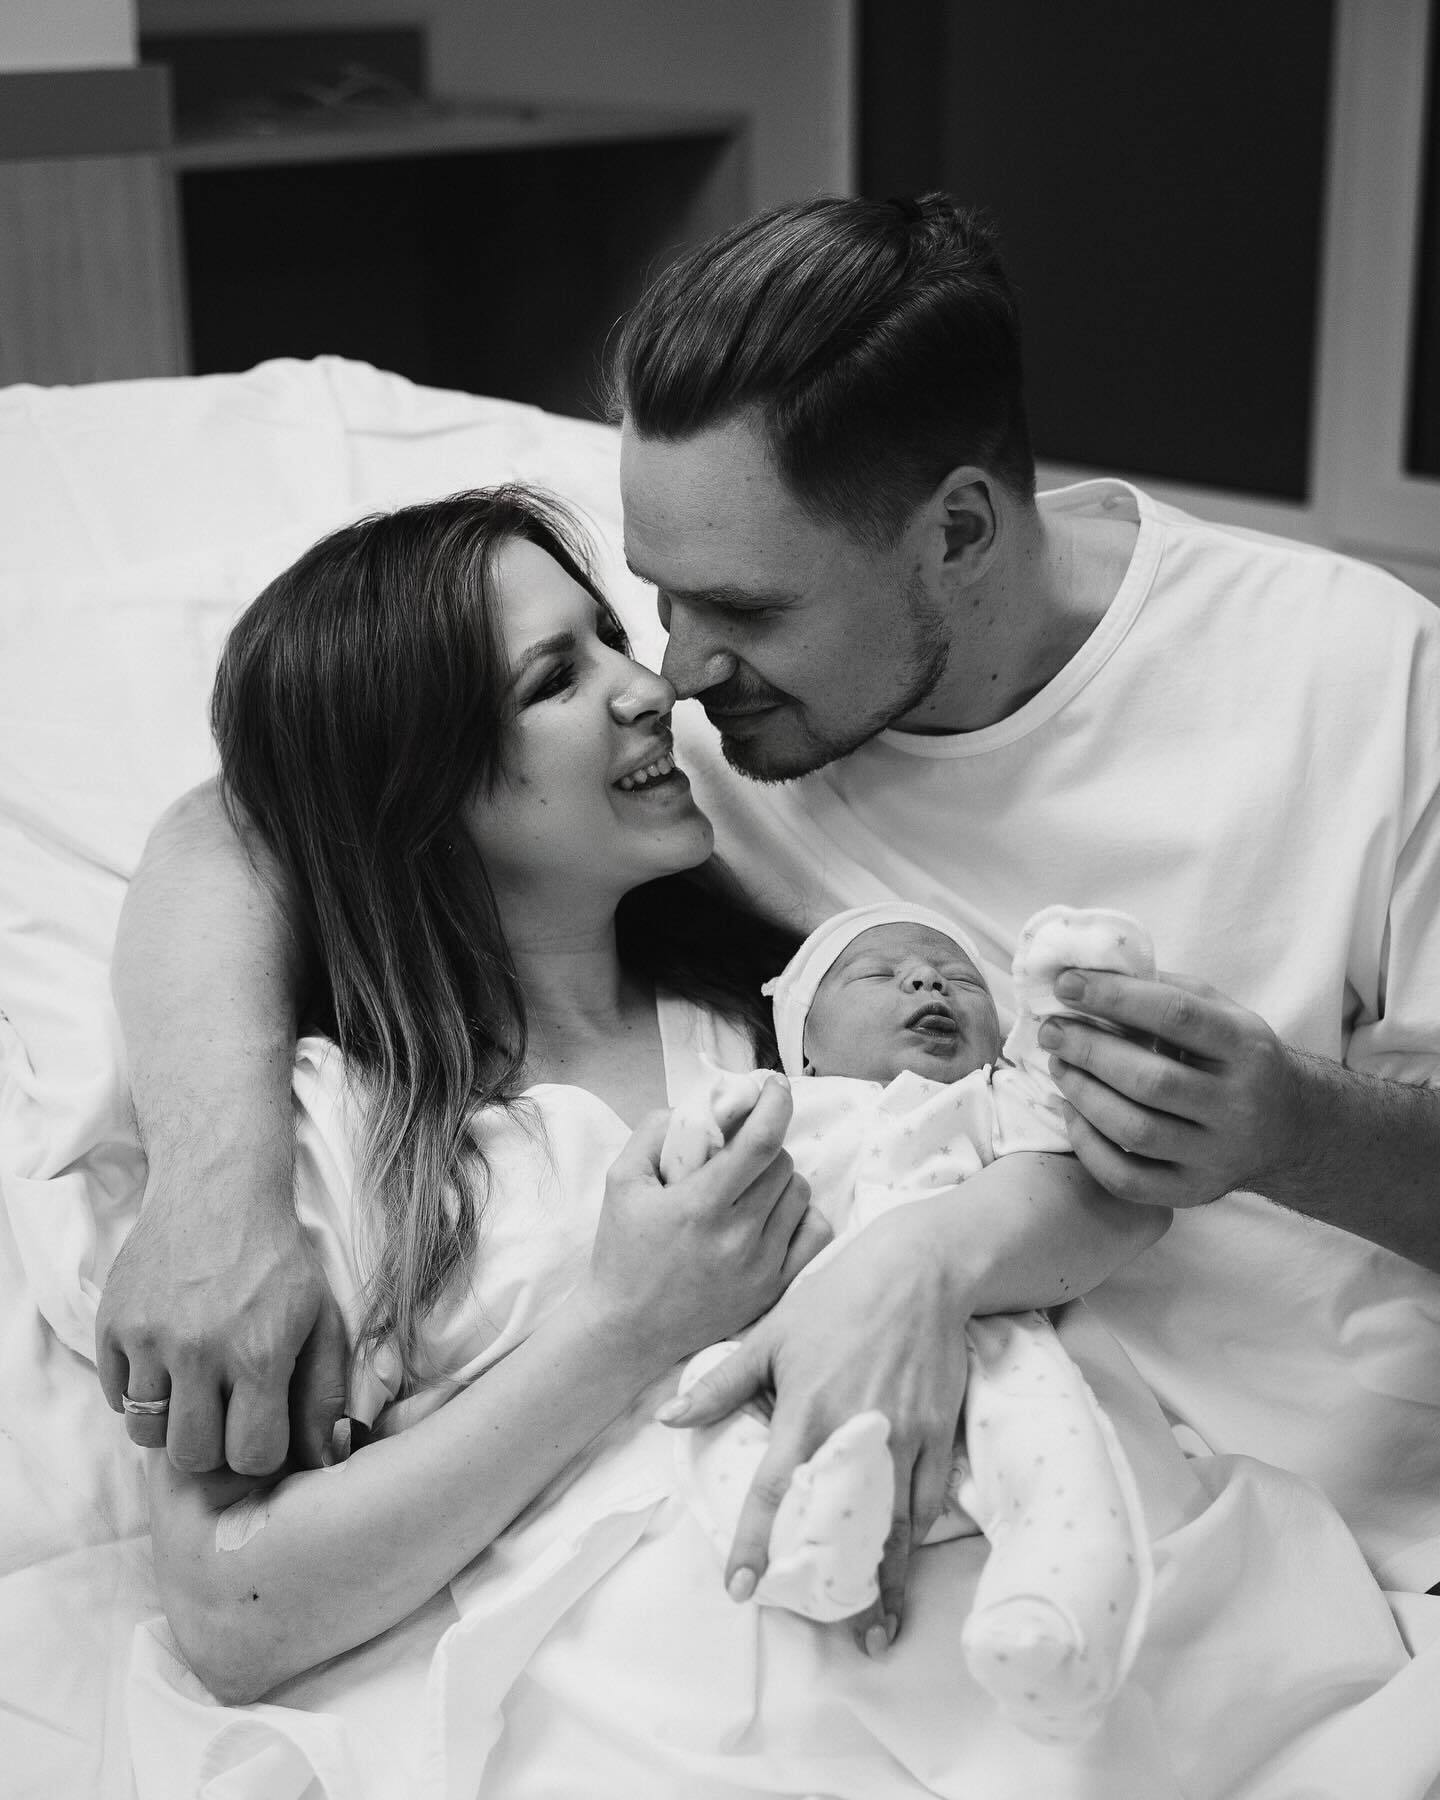 Блогеры Натали Литвин и Александр Куровский стали родителями. Фото